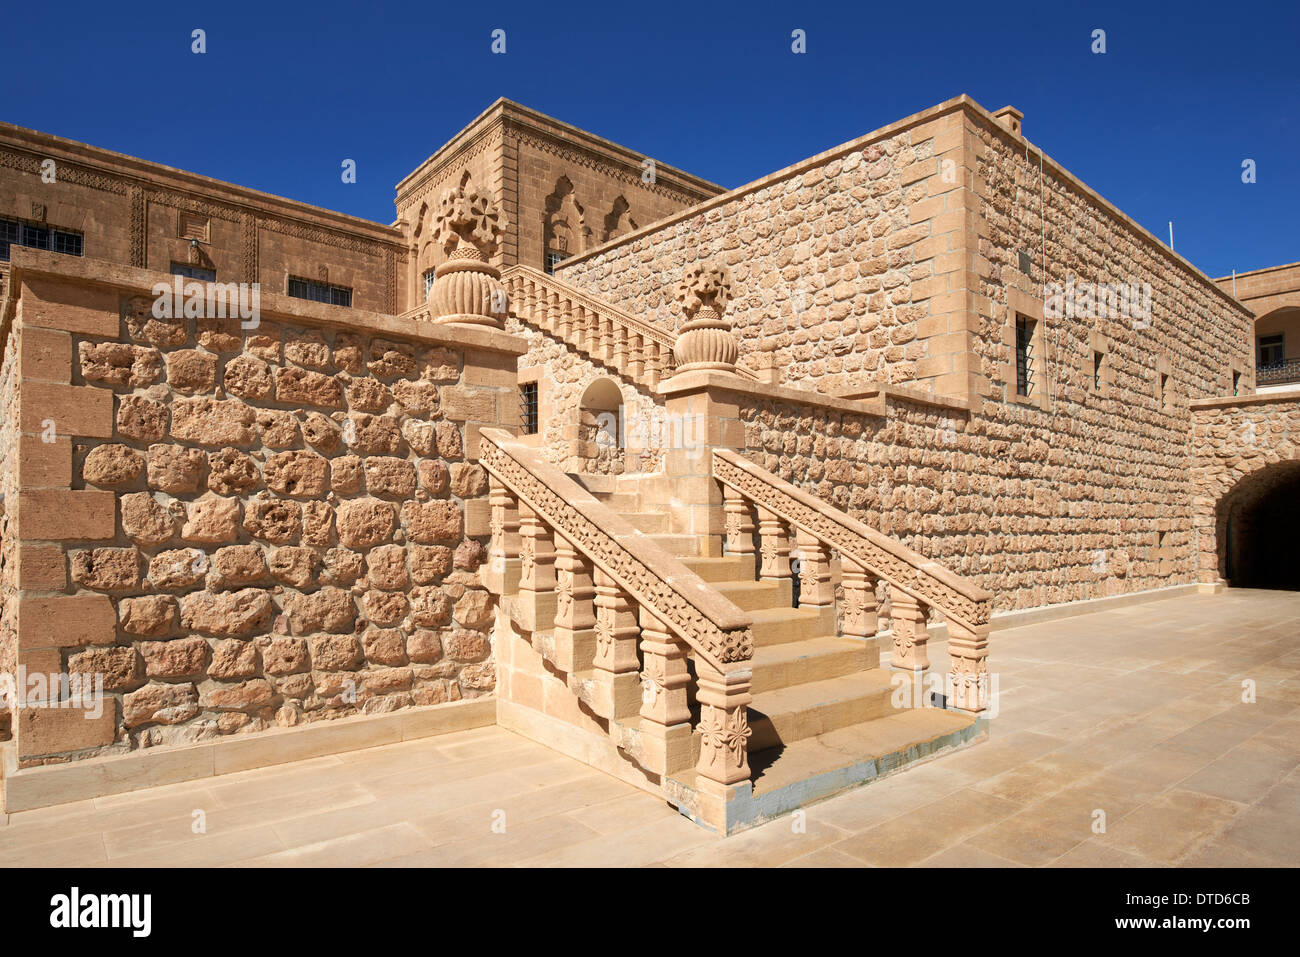 Mor Gabriel monastero, la più antica lingua siriaca monastero ortodosso in tutto il mondo e sede dell'arcivescovo di Tur Abdin Foto Stock